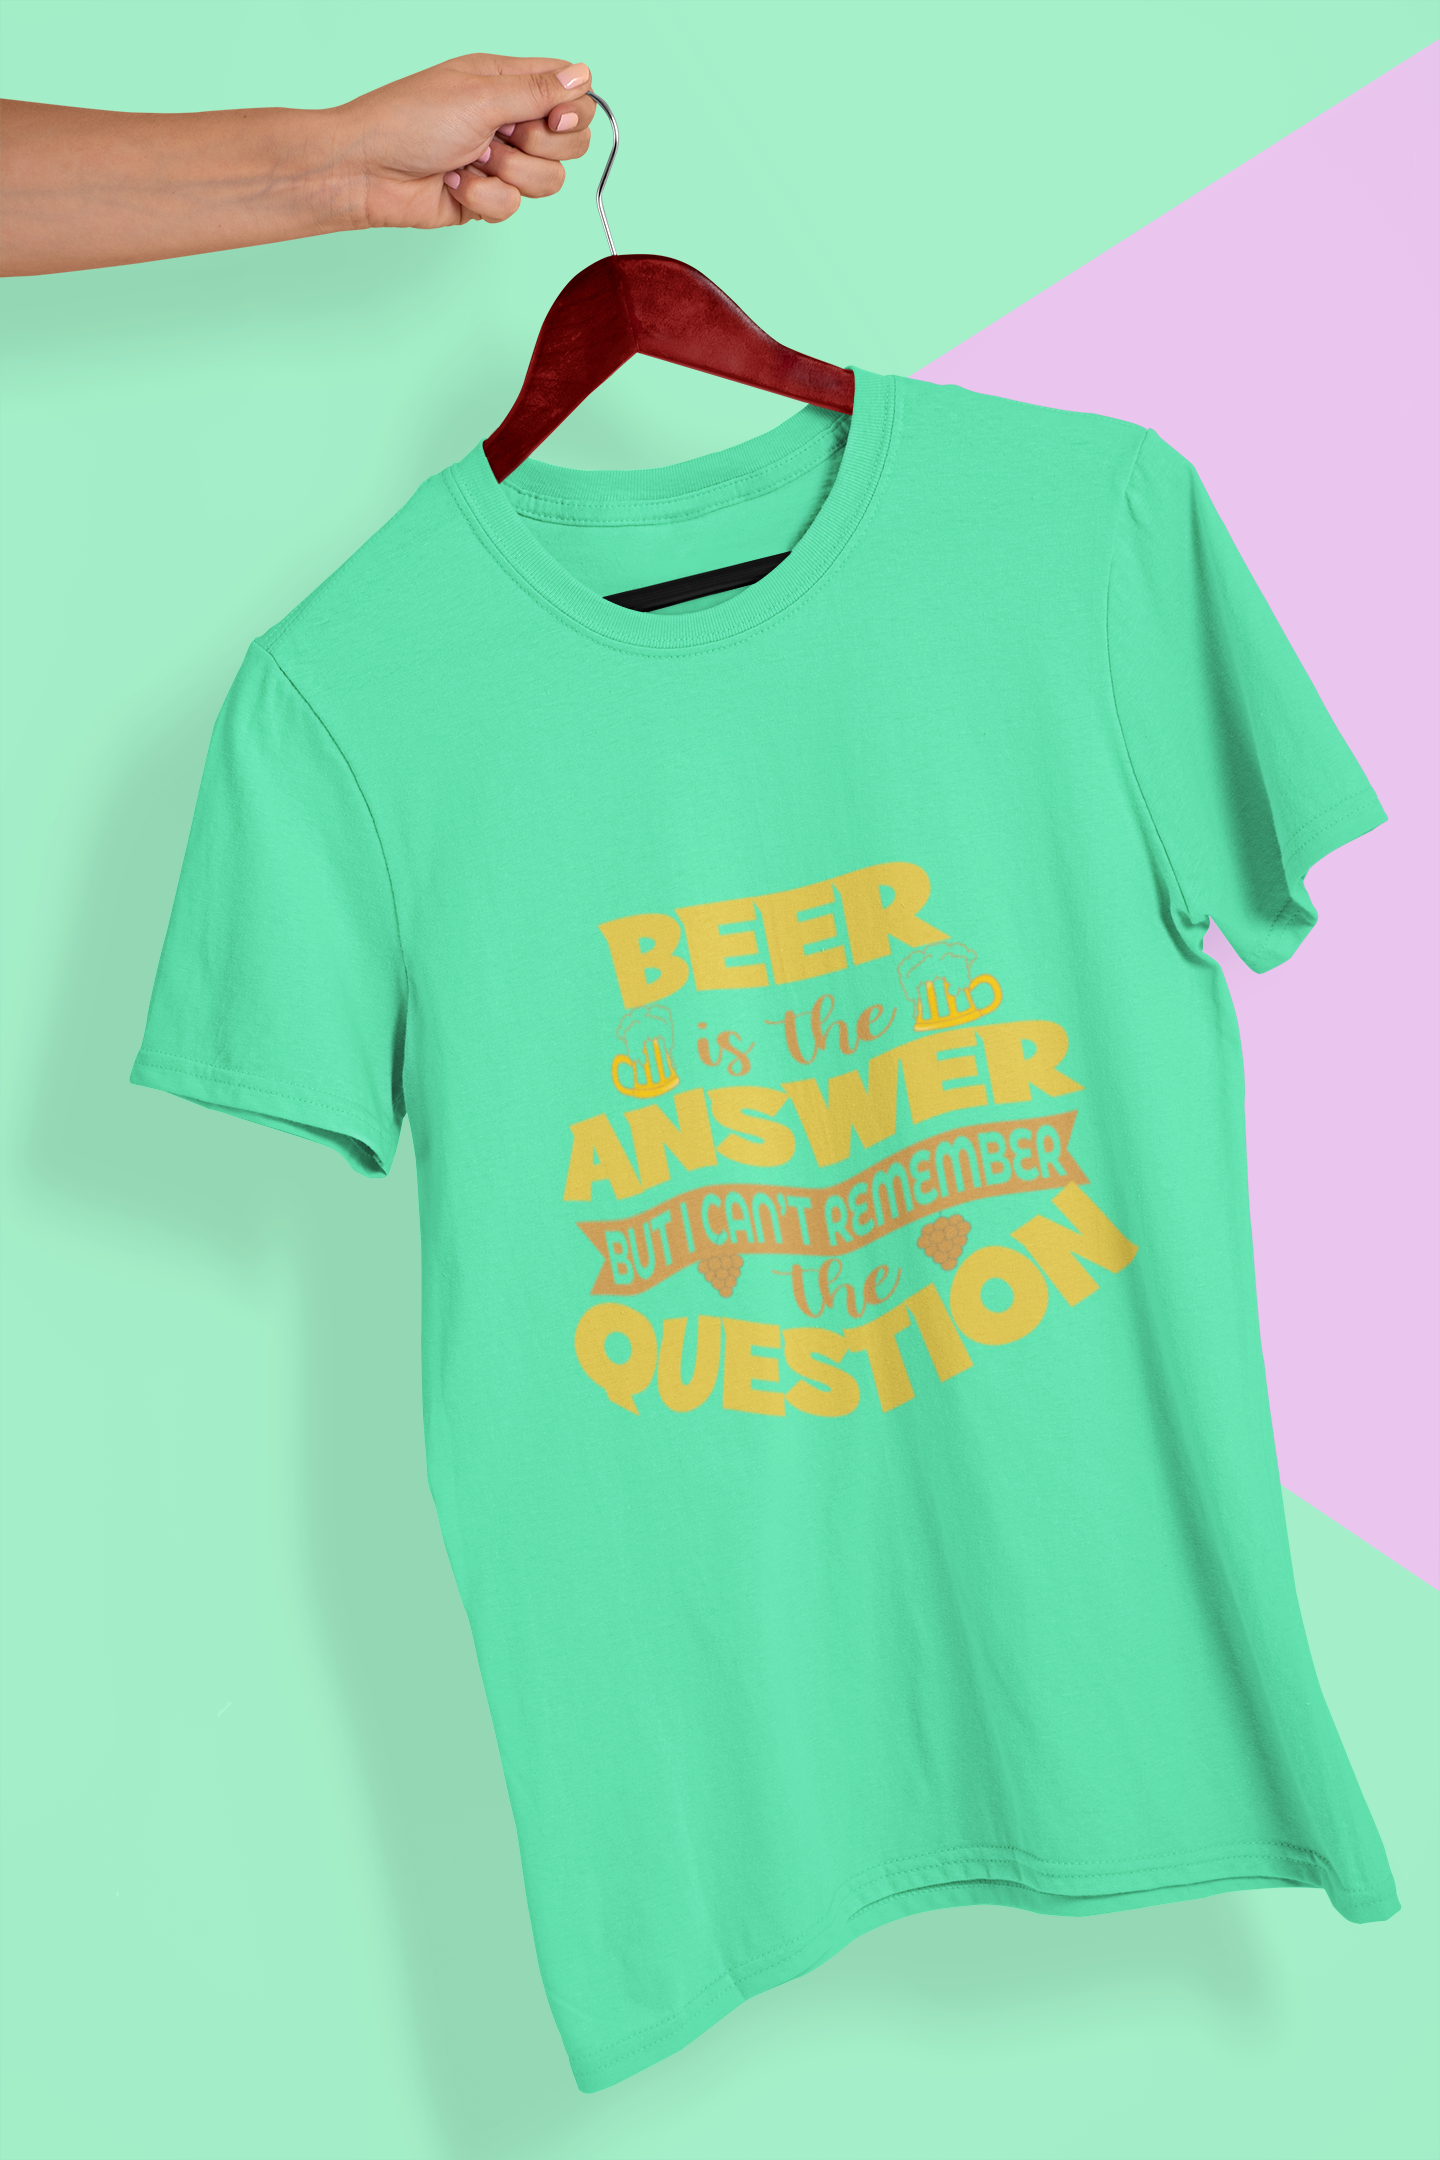 Beer Is The Answer Women Half Sleeves T-shirt- FunkyTeesClub